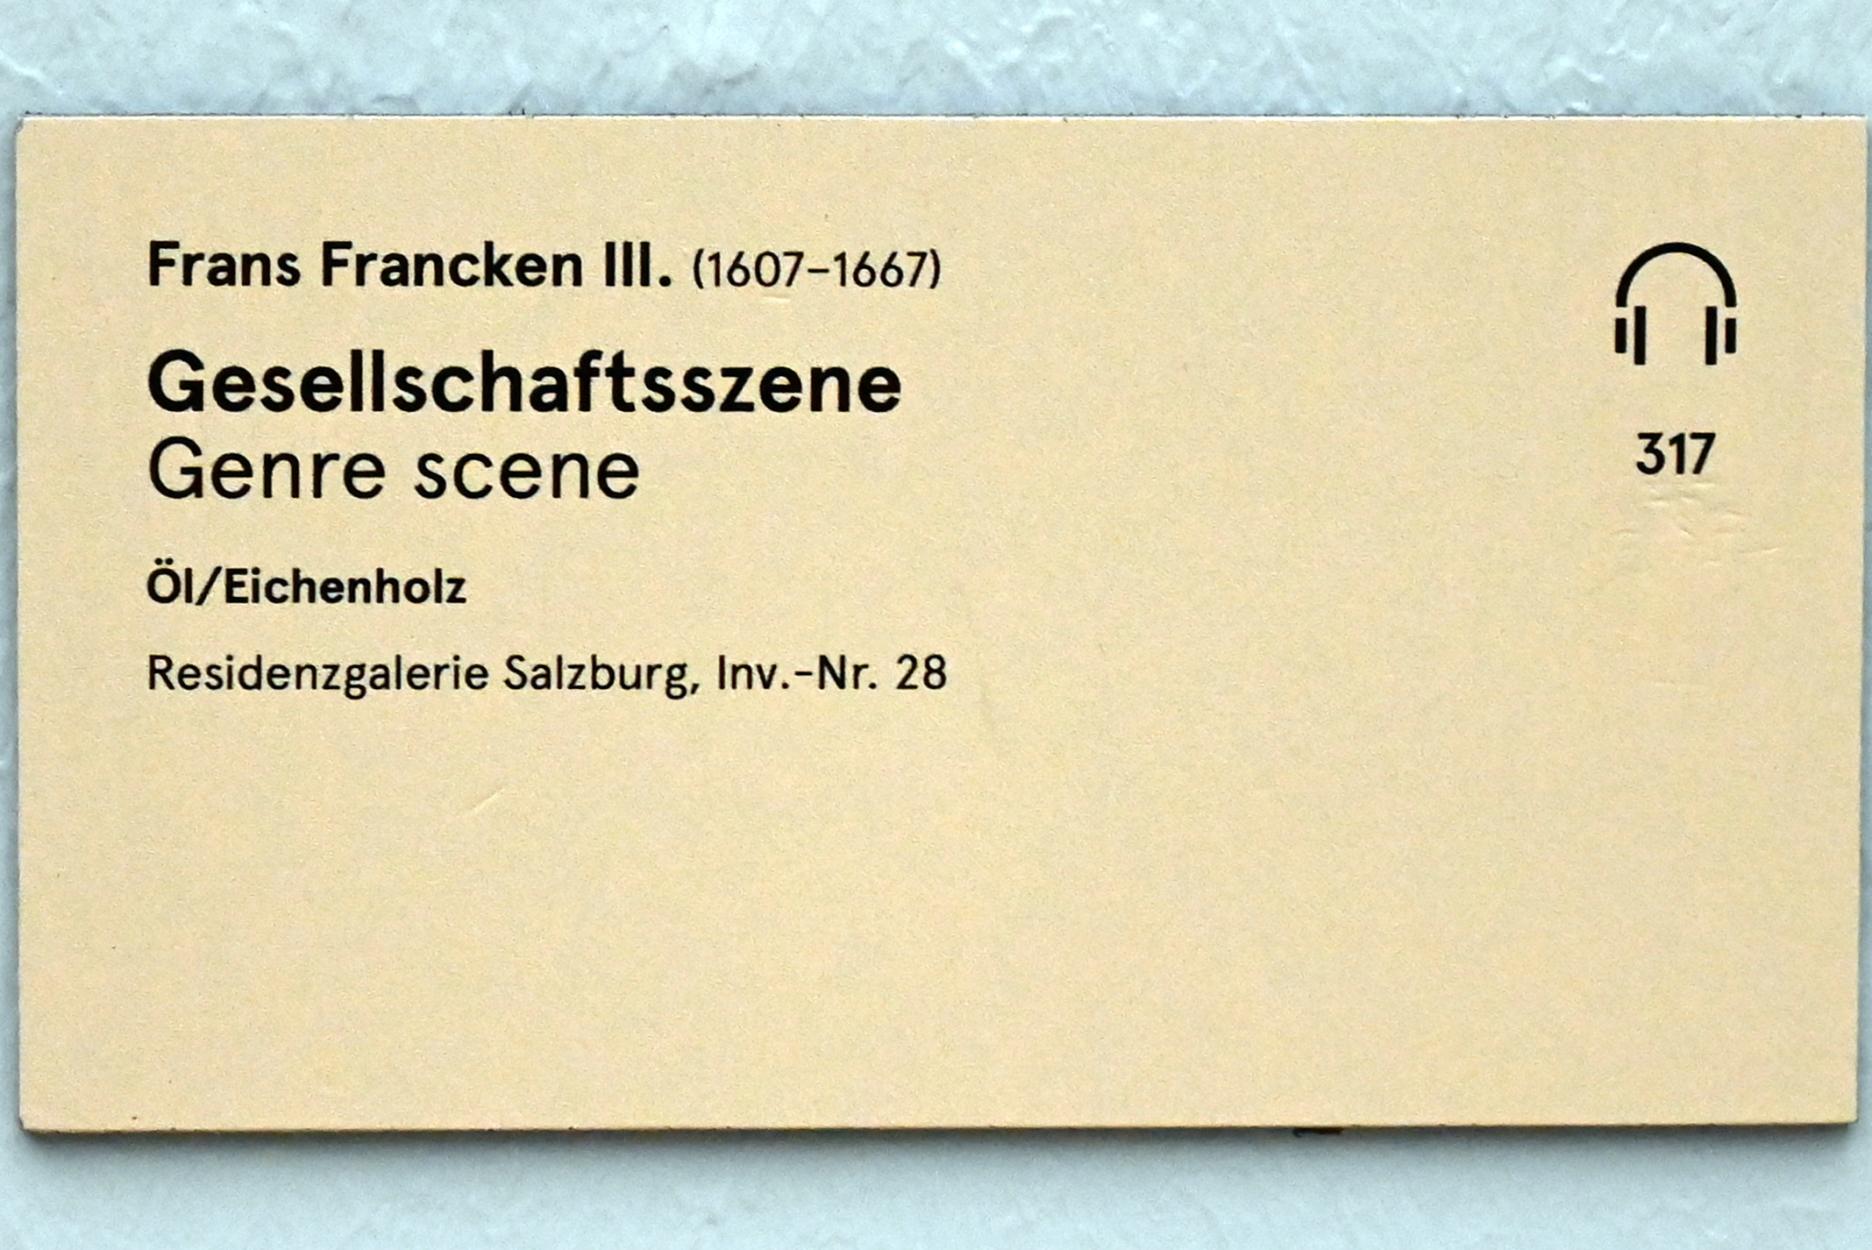 Frans Francken III (Undatiert), Gesellschaftsszene, Salzburg, Salzburger Residenz, Residenzgalerie, Undatiert, Bild 2/2